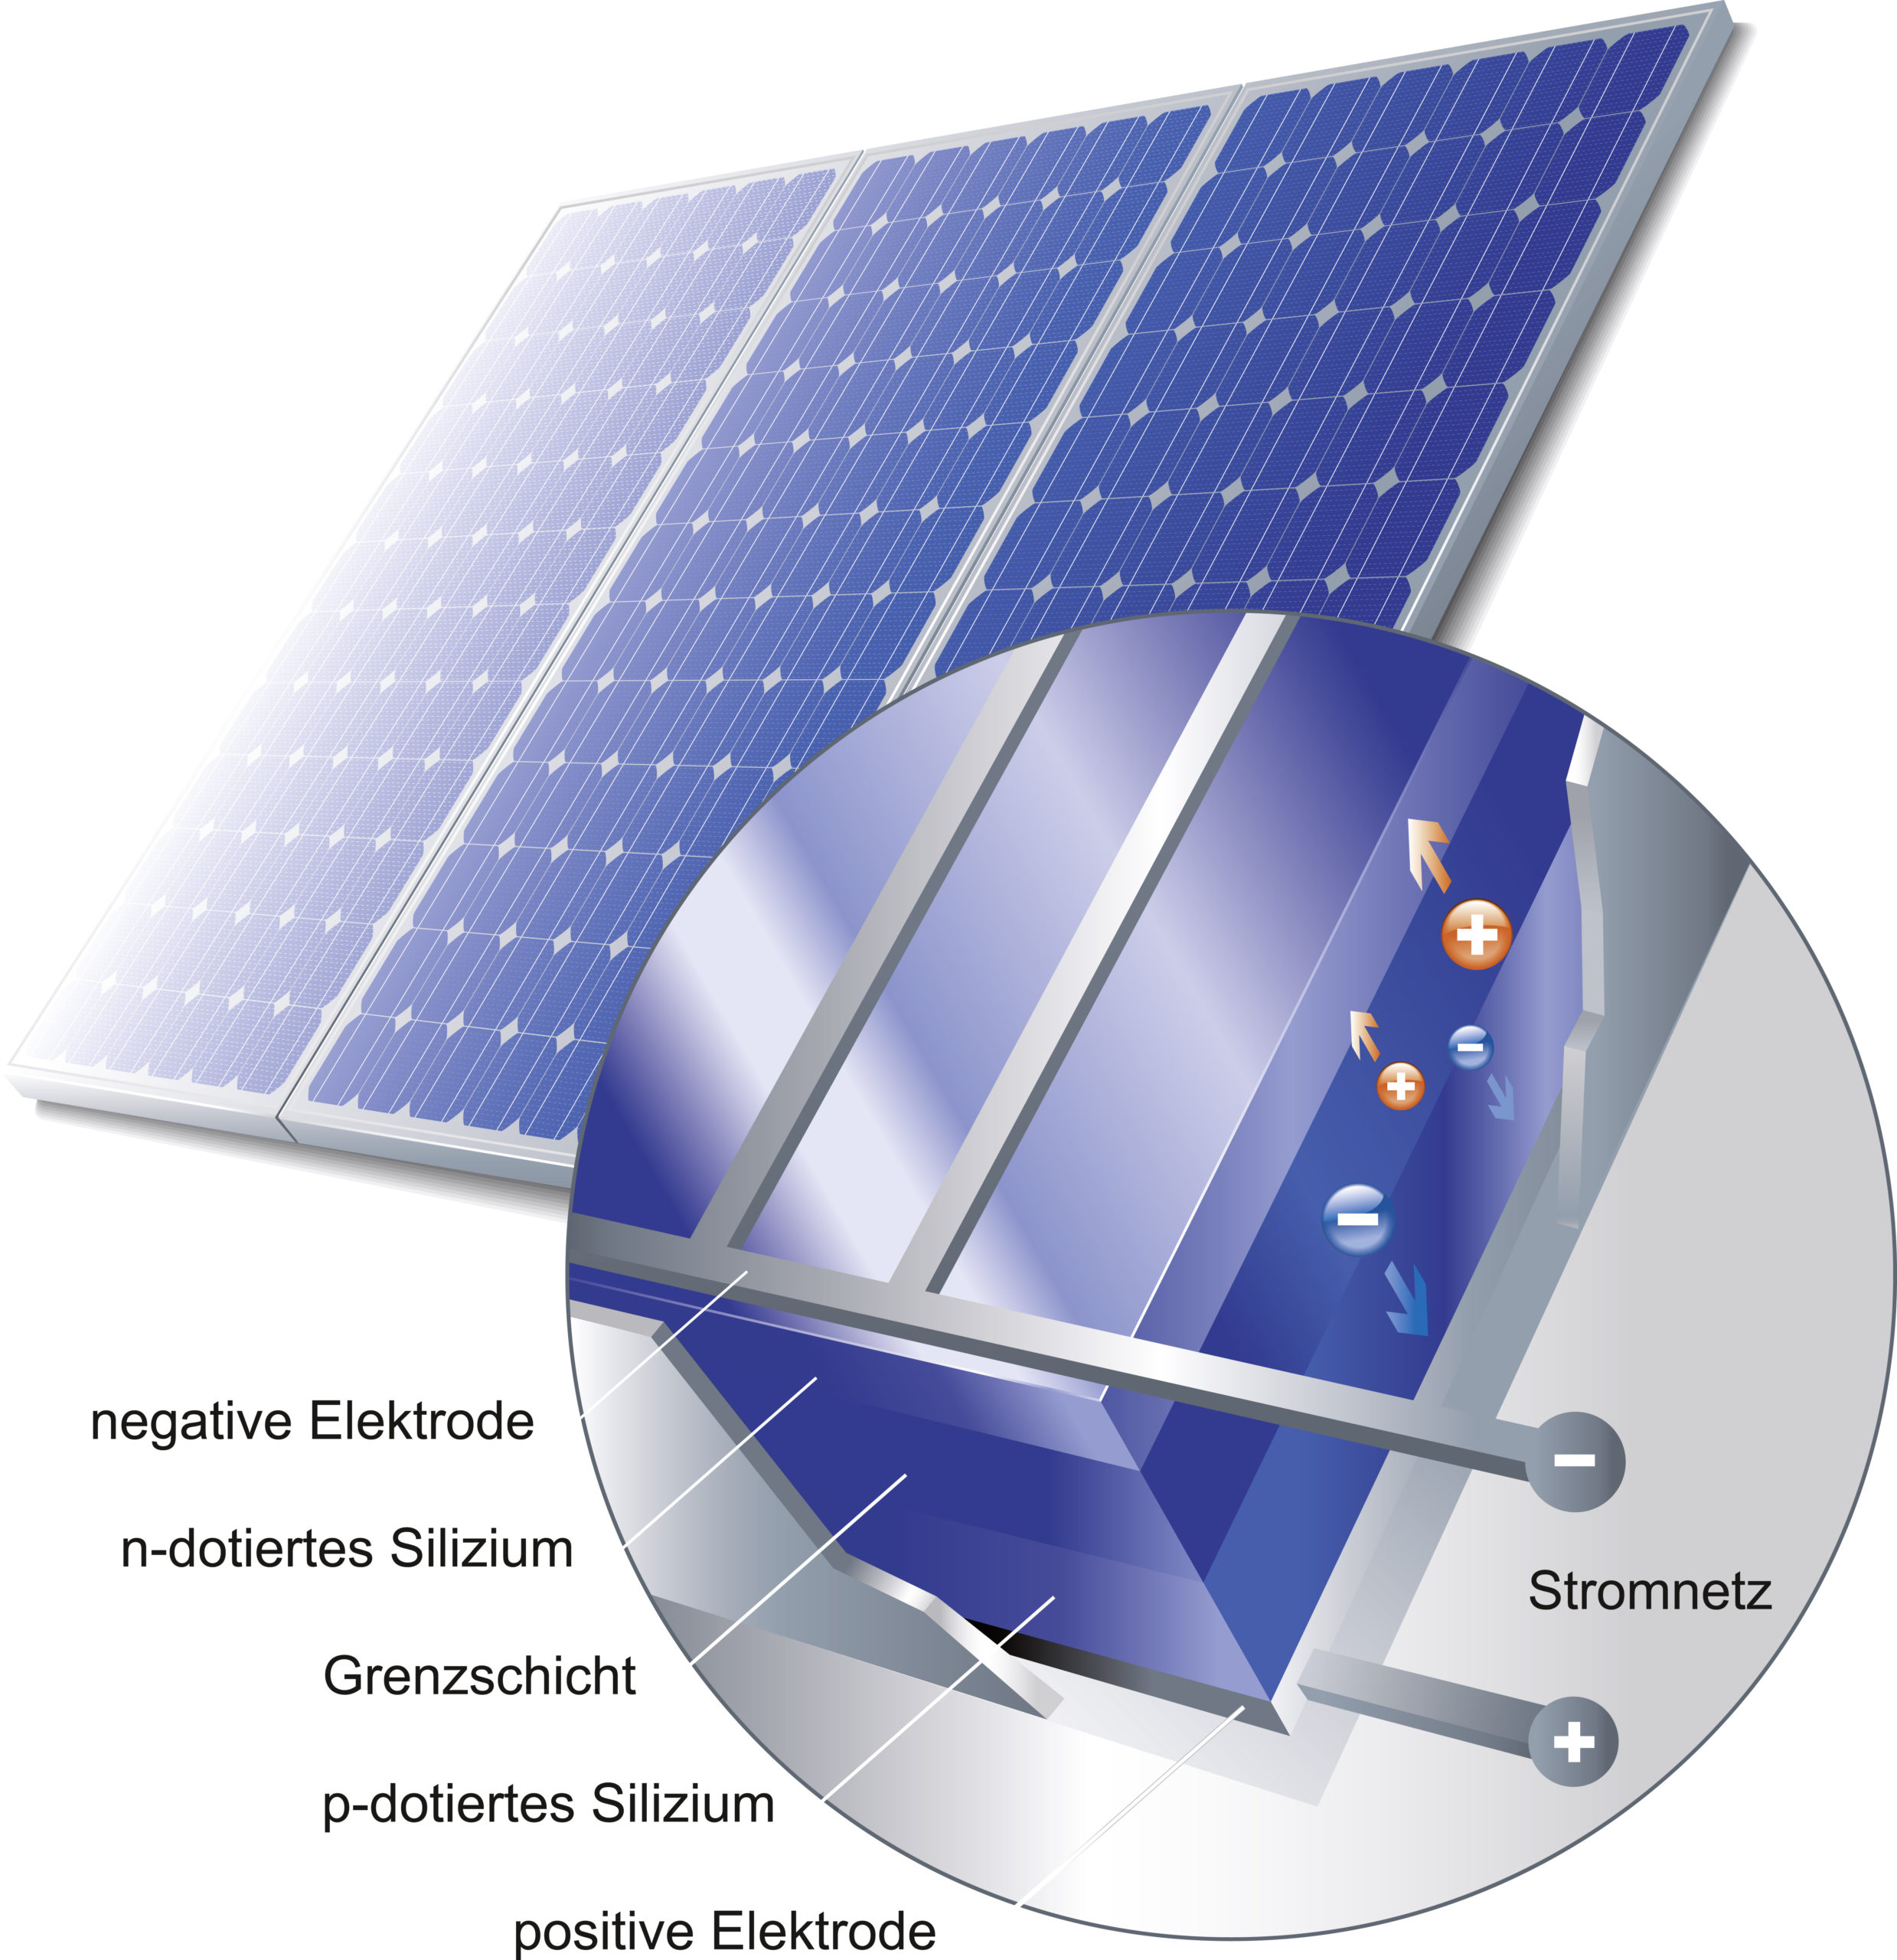 https://www.sonnenstrom.net/wp-content/uploads/2020/08/02b_Solarzellen-scaled.jpeg